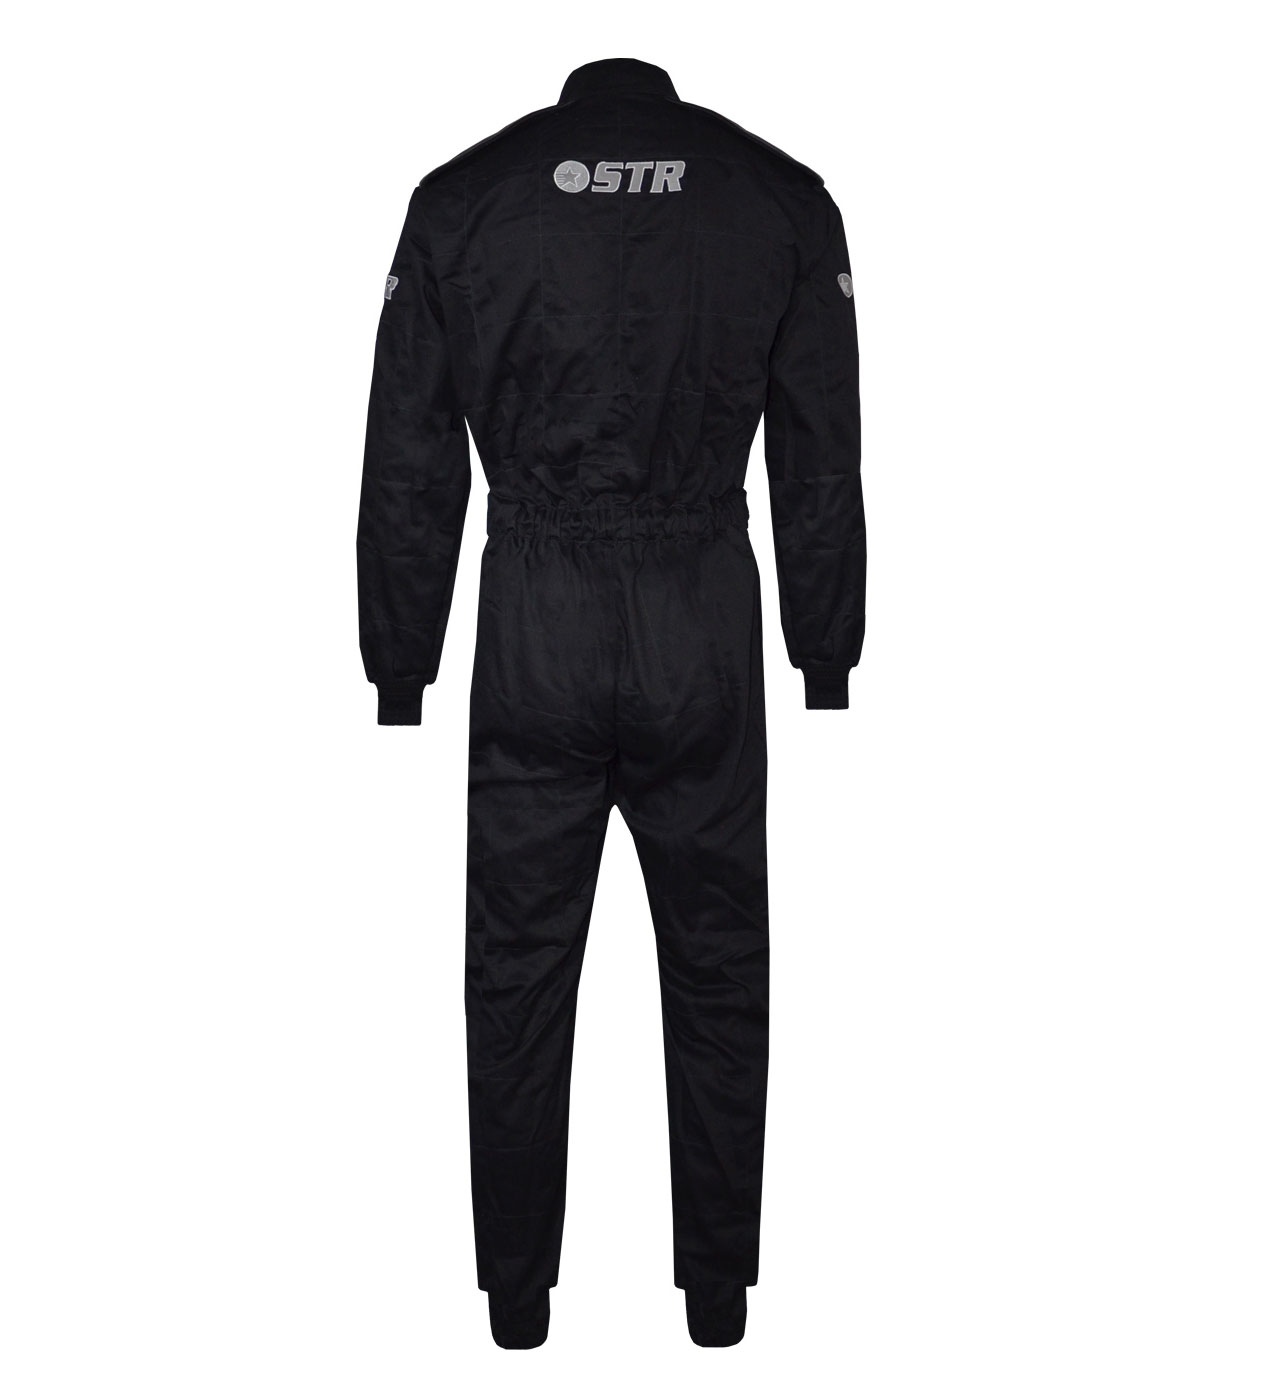 STR 'Graphite Pro' Race Suit - Black/Grey